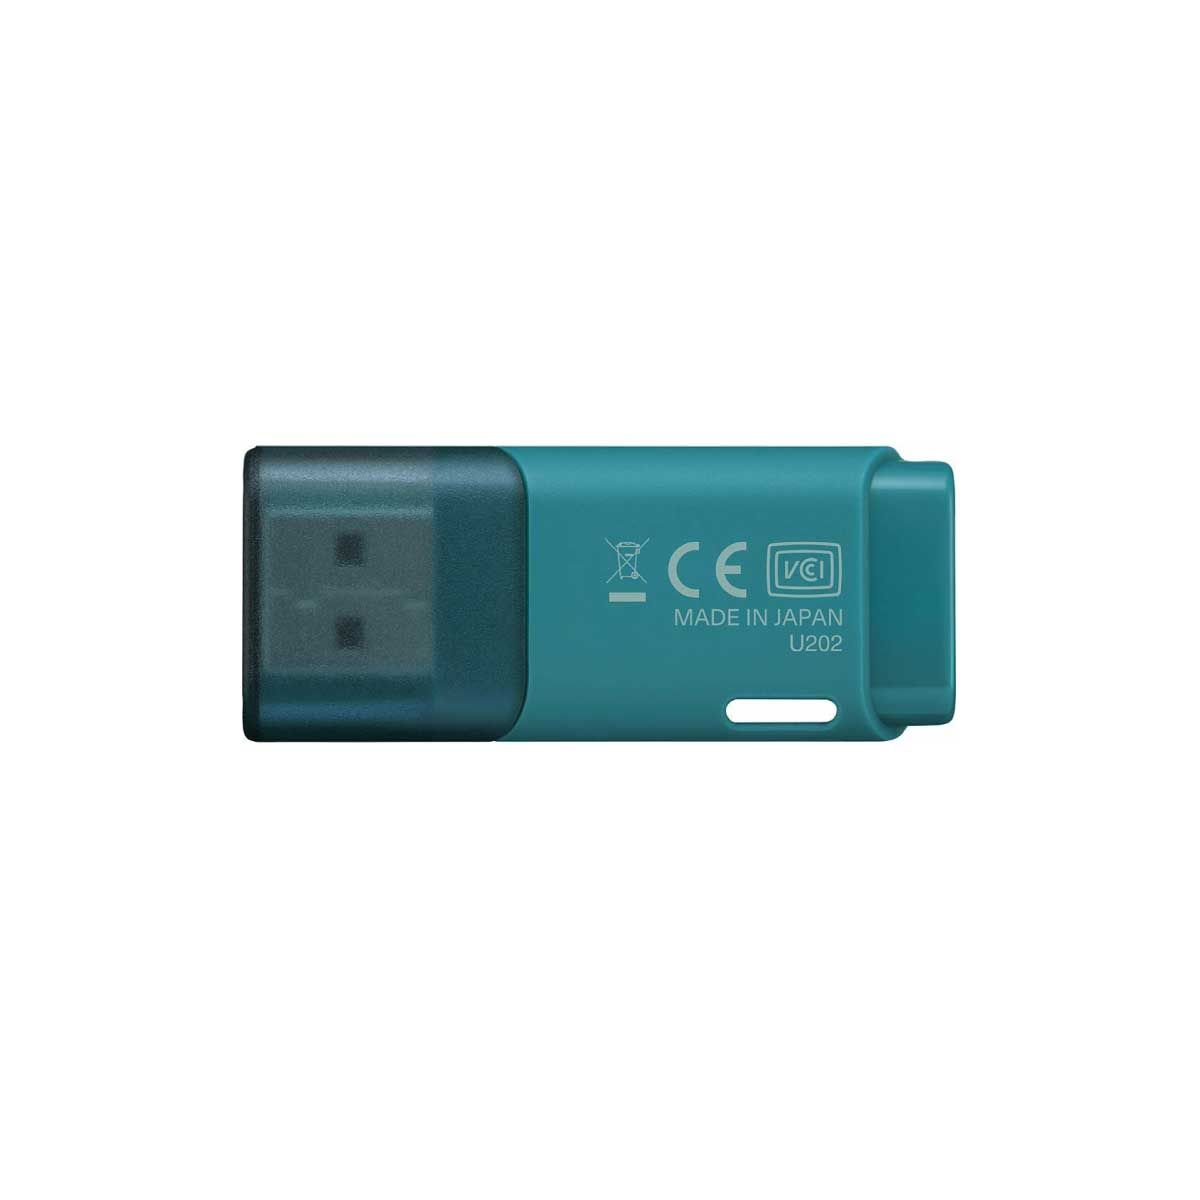 Kioxia U202 USB 2.0 32GB Light Blue Flash Drive (แฟลชไดรฟ์)